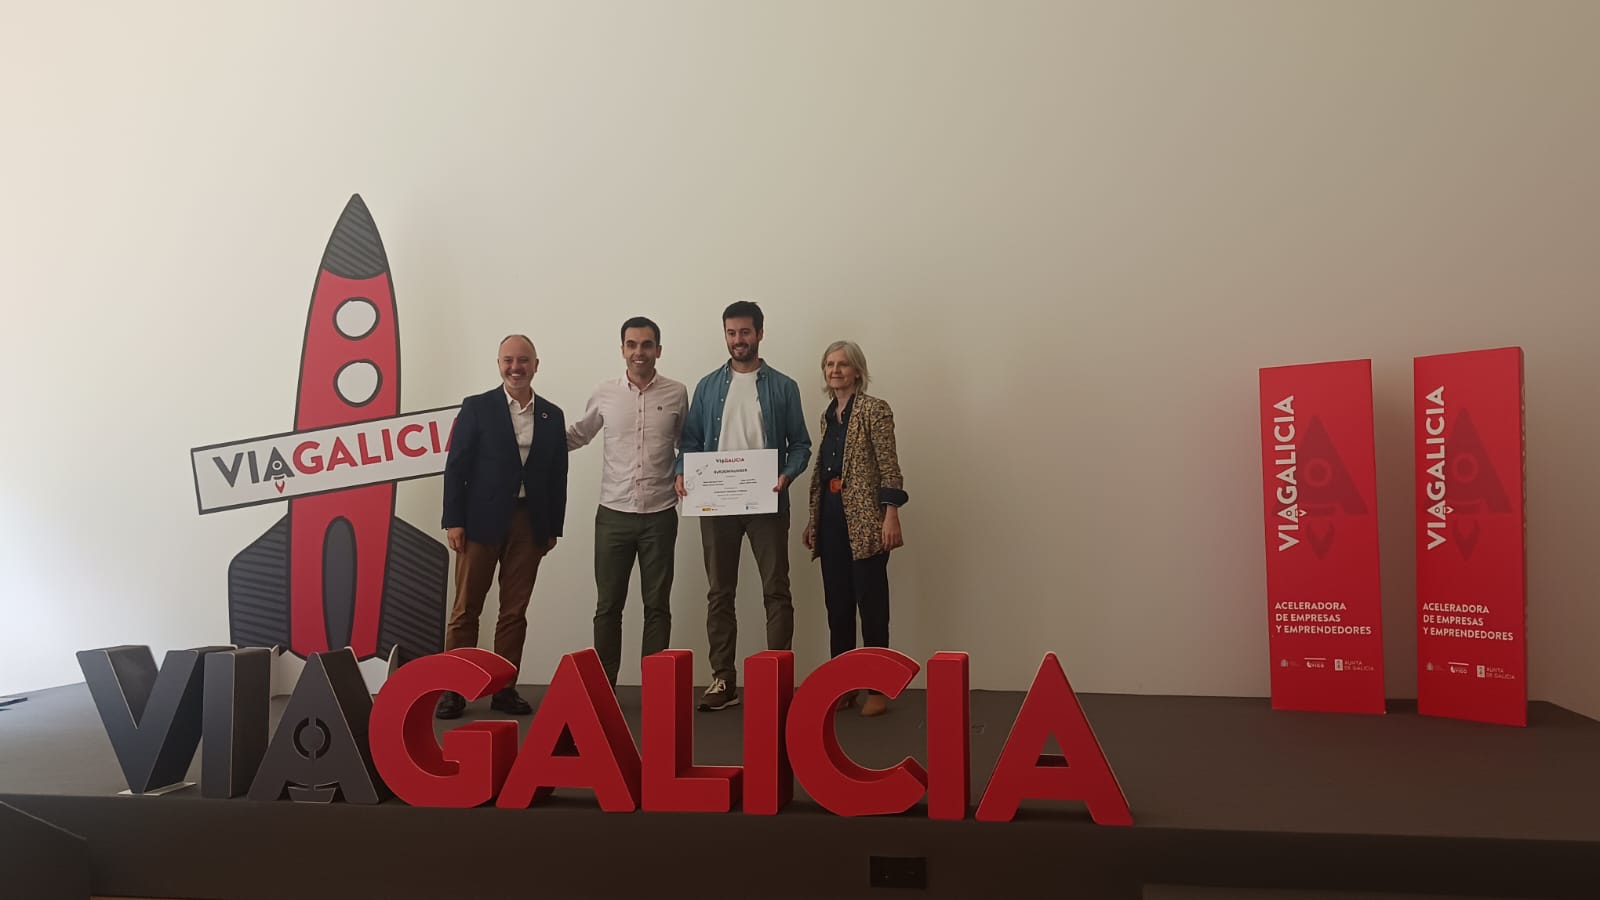 Image 1 of article A Xunta salienta o papel de ViaGalicia na configuración dun ecosistema emprendedor galego sustentado no talento e na innovación